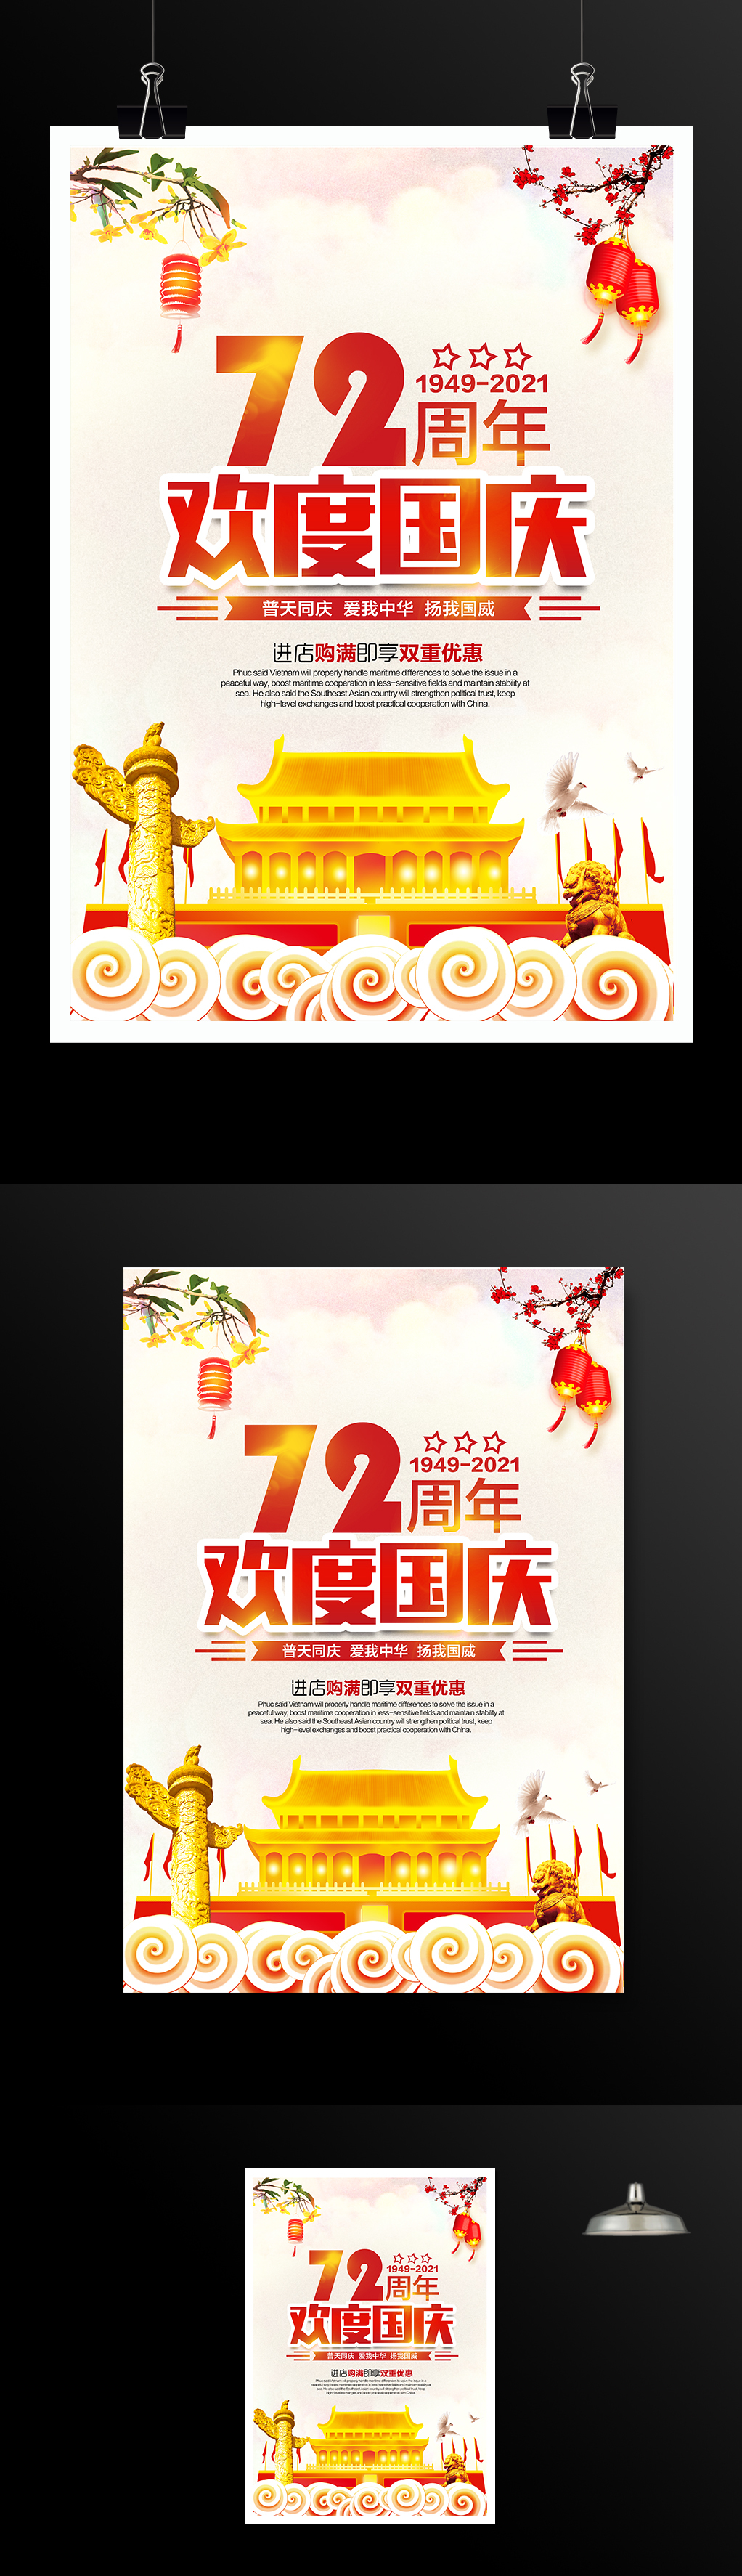 欢度国庆72周年宣传海报